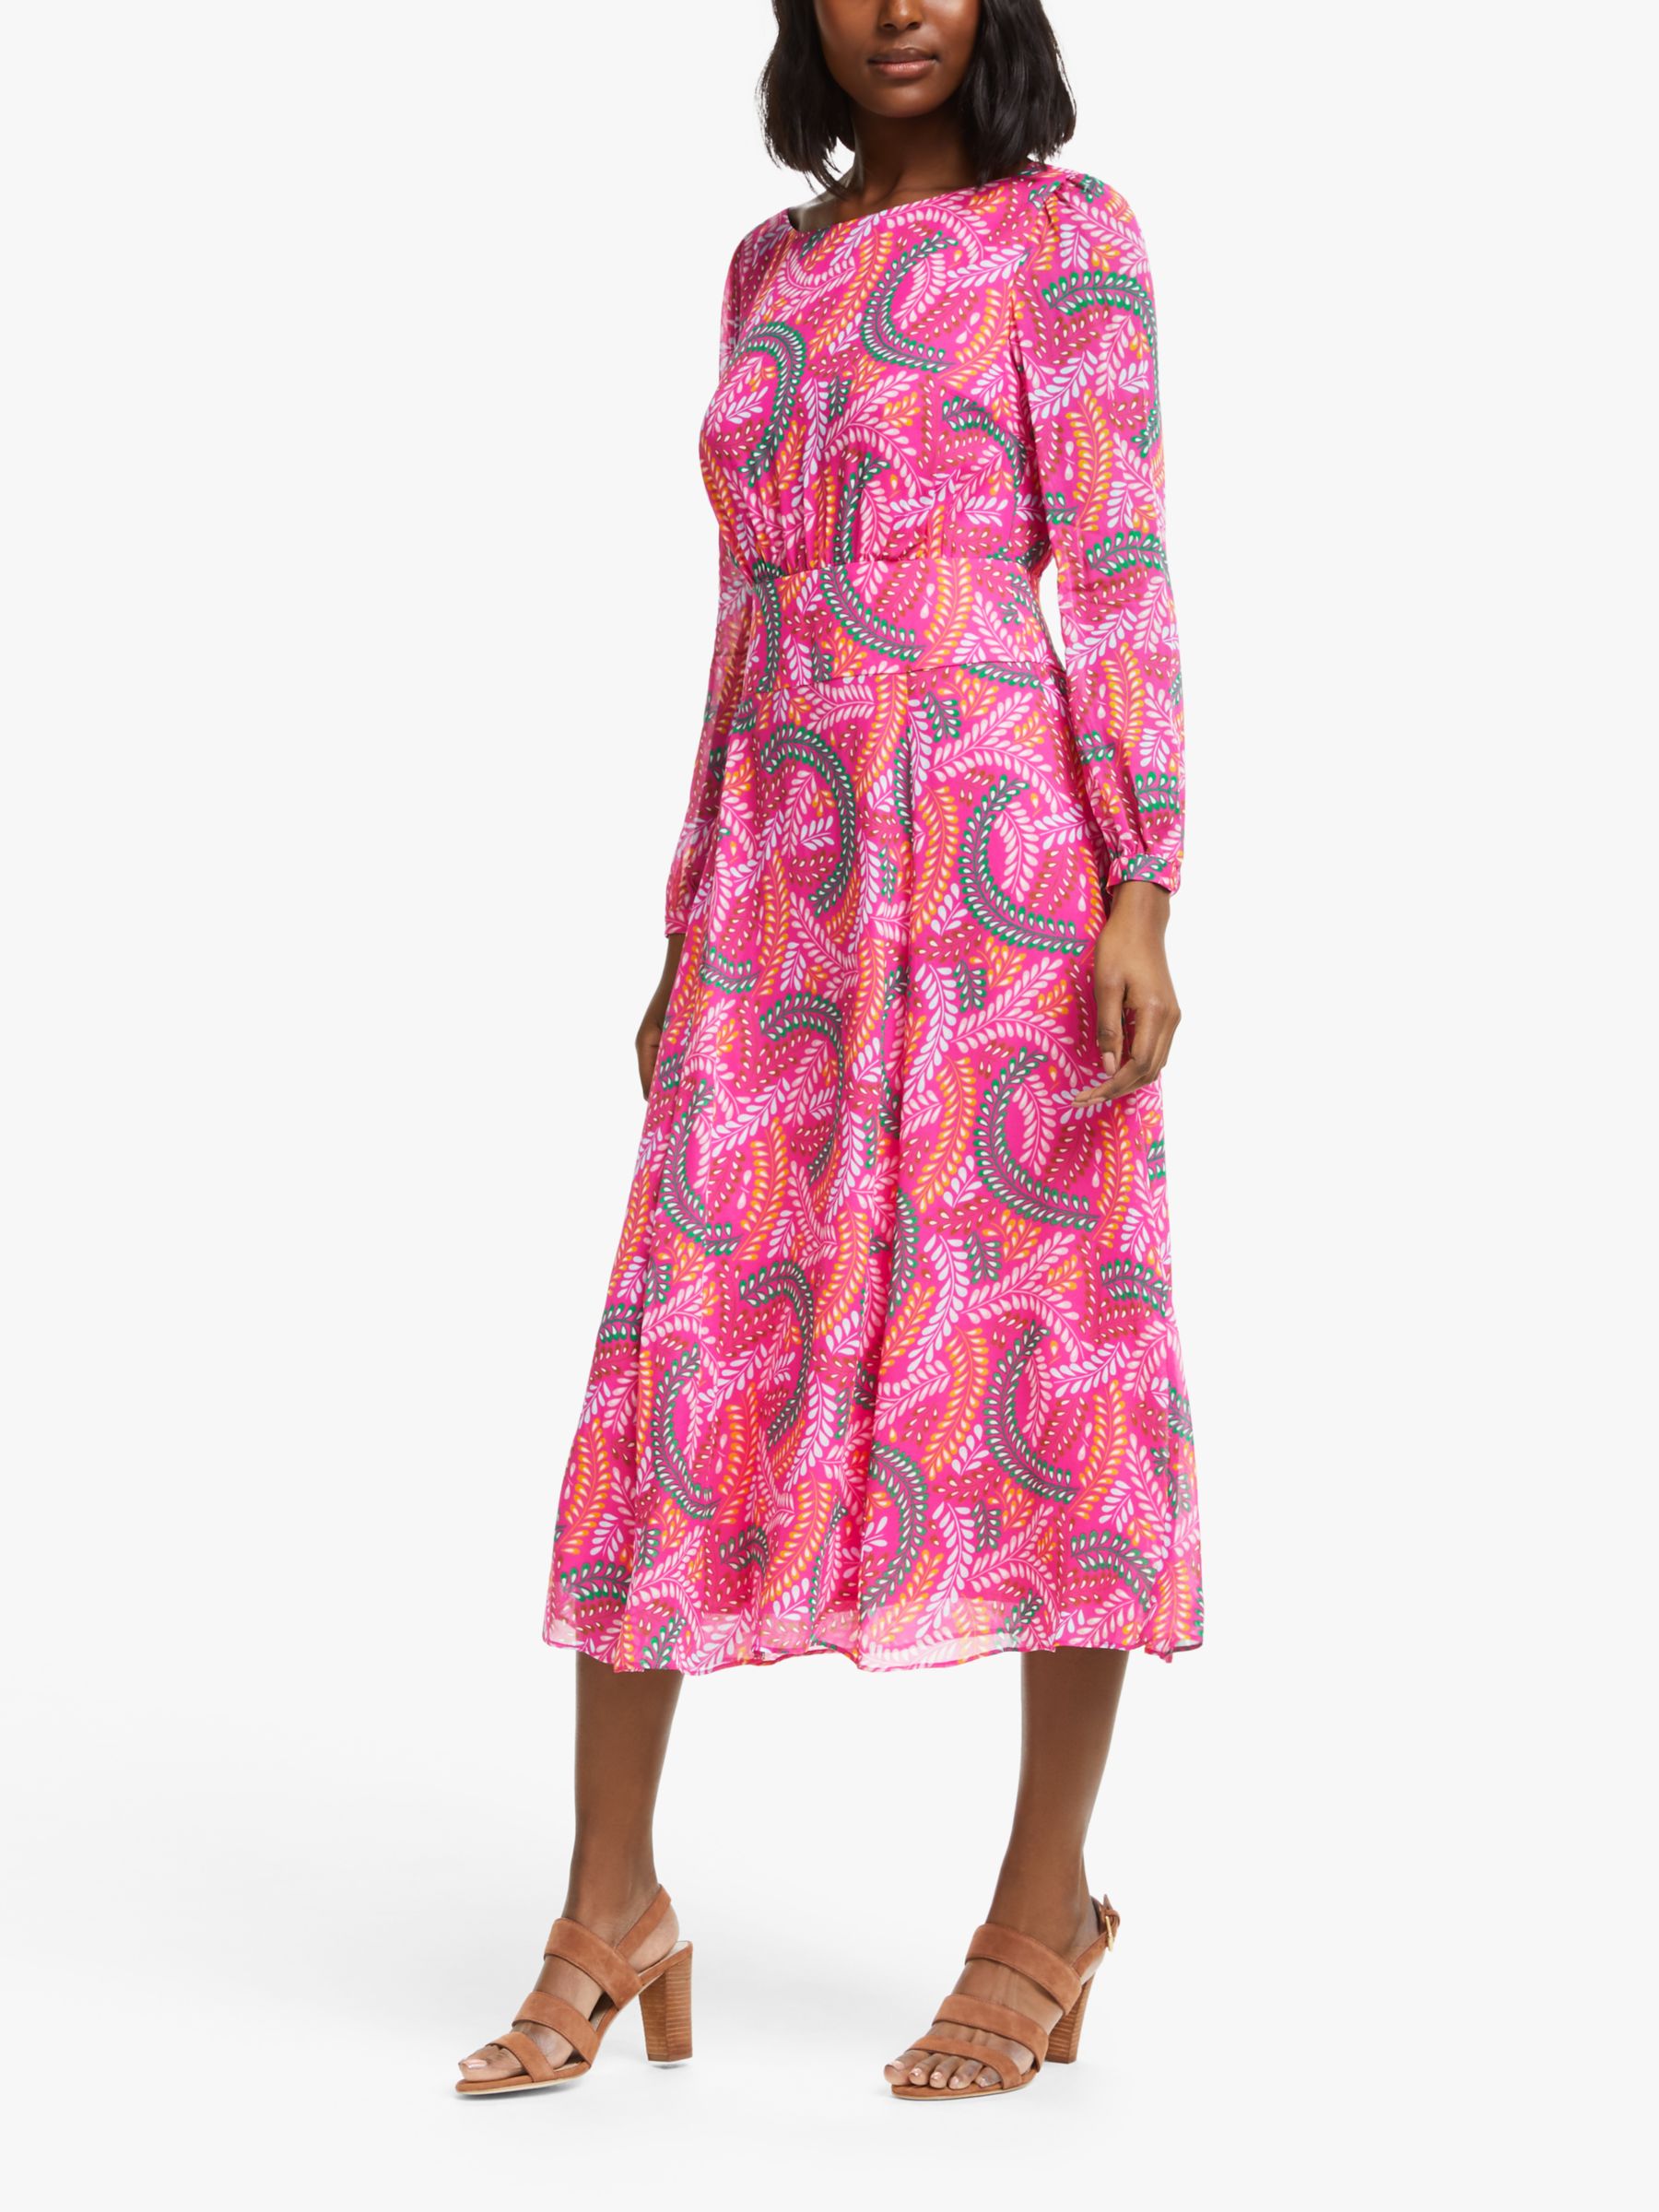 Boden Ingrid Midi Dress, Party Pink/Swish at John Lewis & Partners